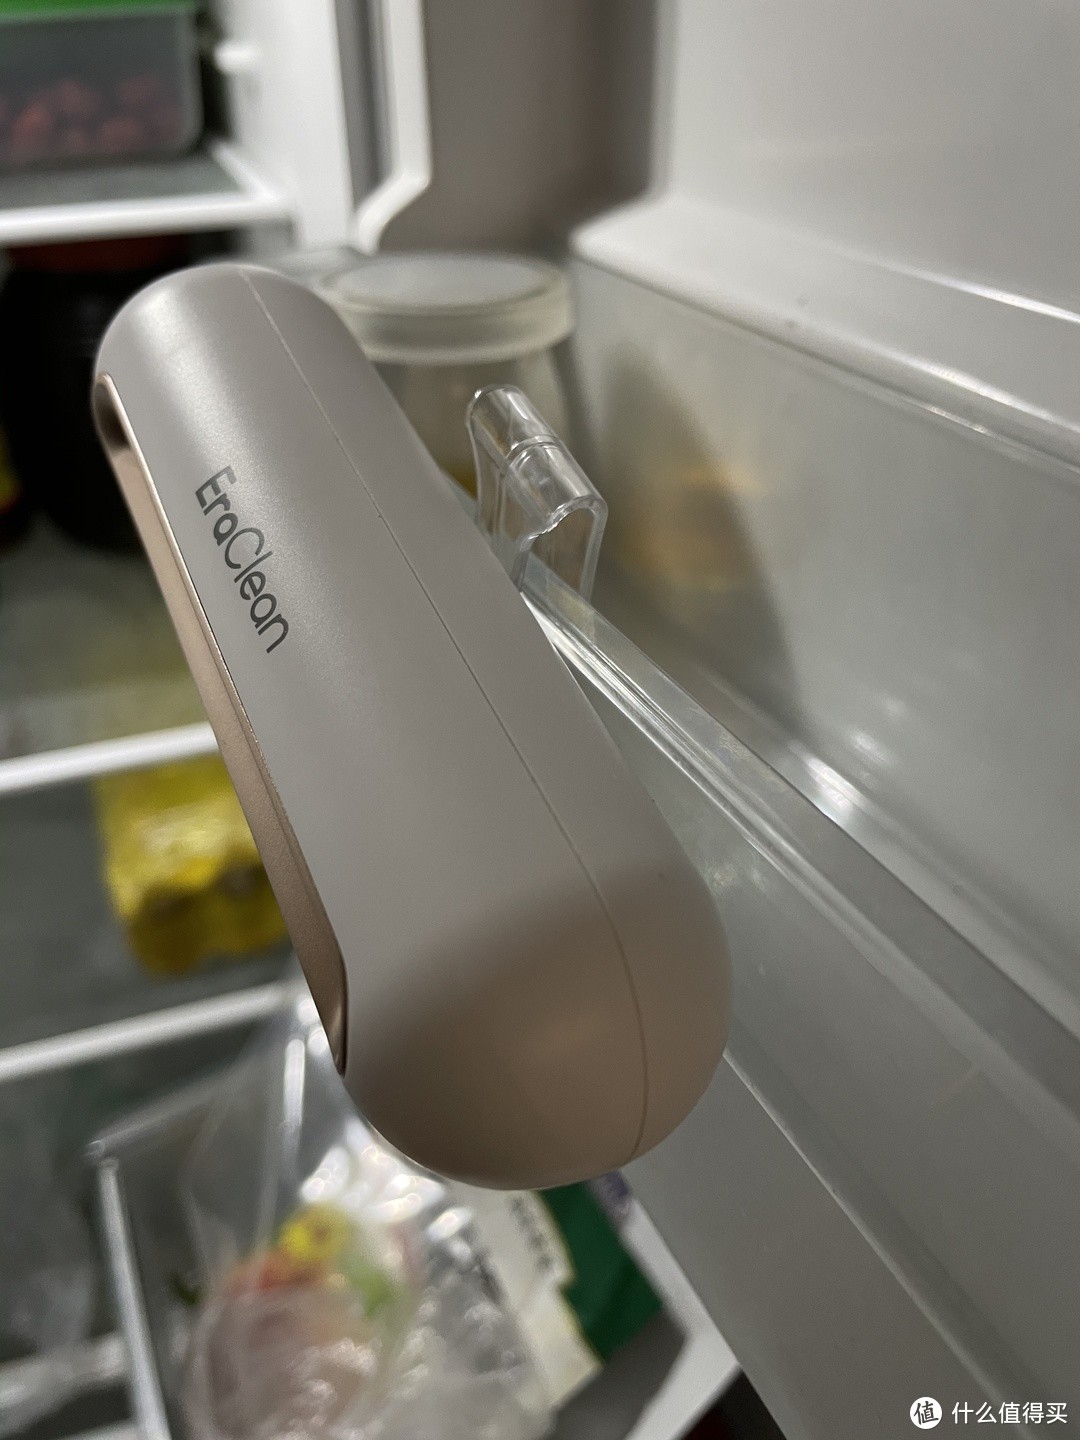 不用更换耗材的除味盒---- EraClean冰箱净味消毒器